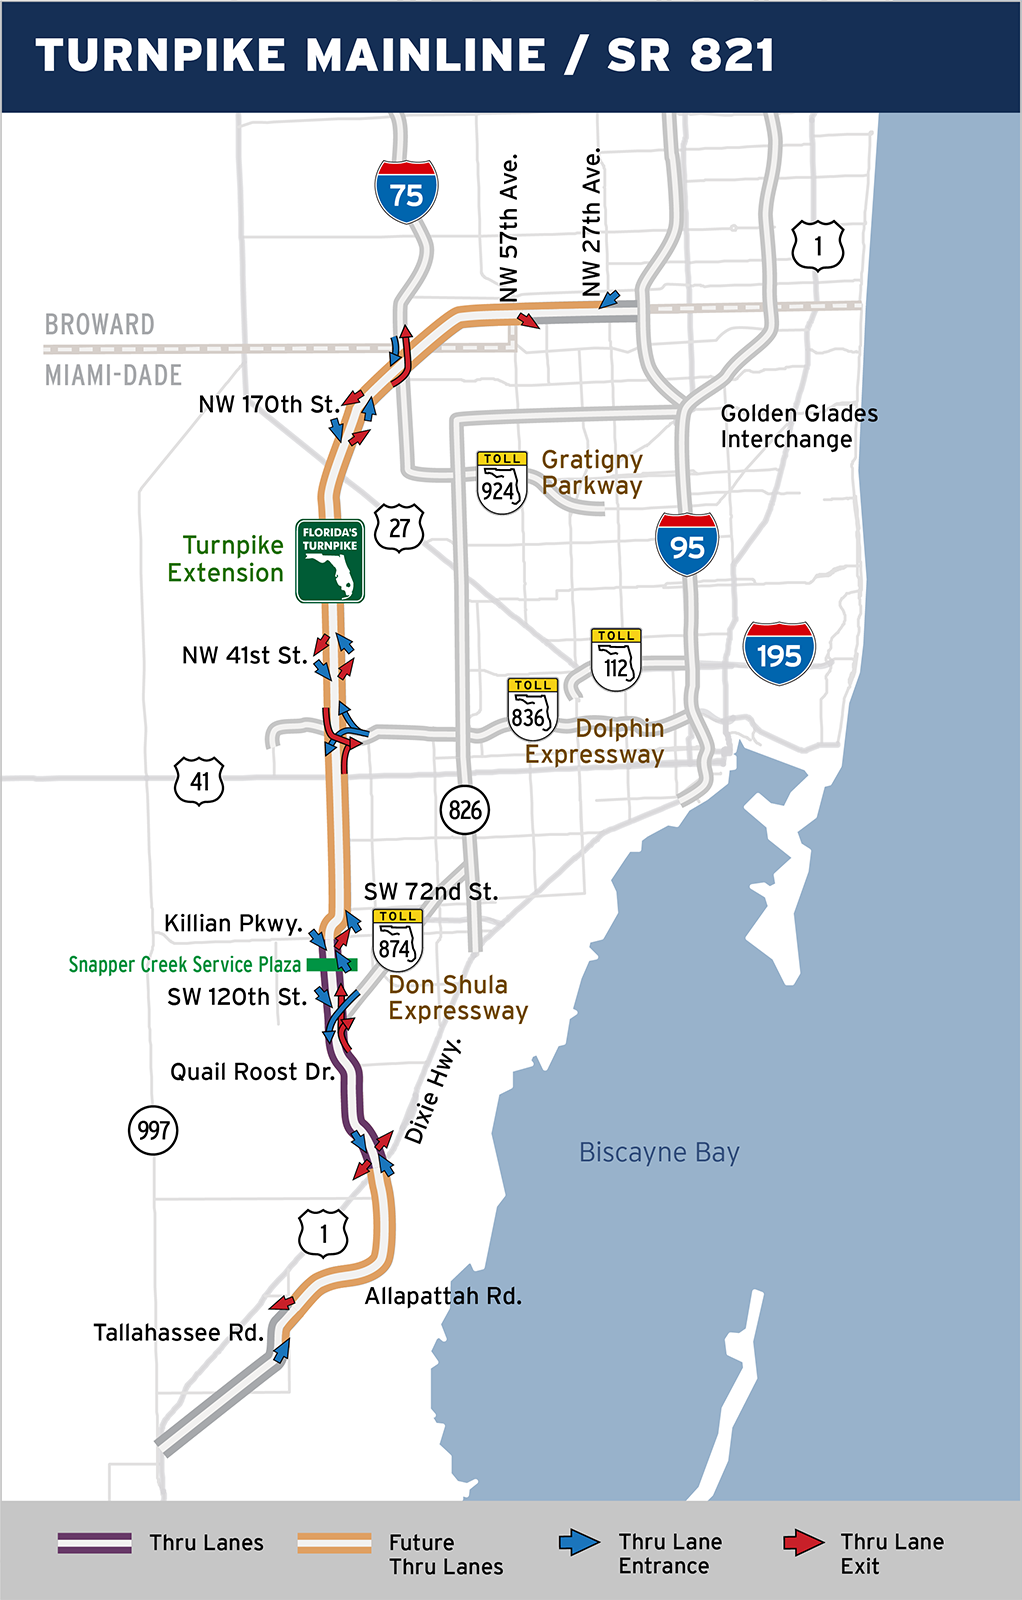 Turnpike Mainline / SR 821 – Florida's Turnpike